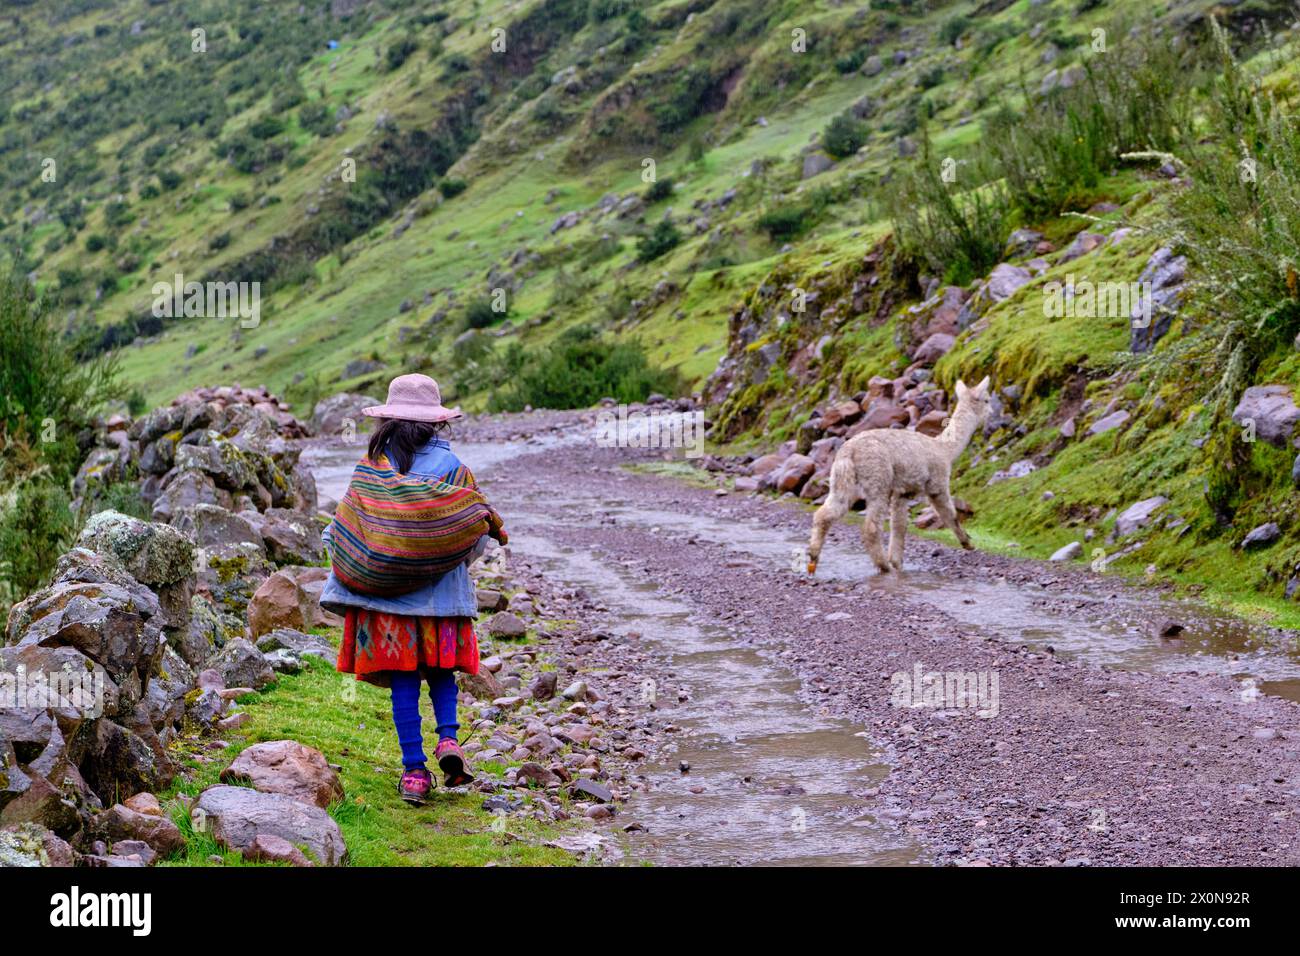 Pérou, province de Cuzco, Vallée sacrée des Incas, communauté des Andes, jeune fille quechua Banque D'Images